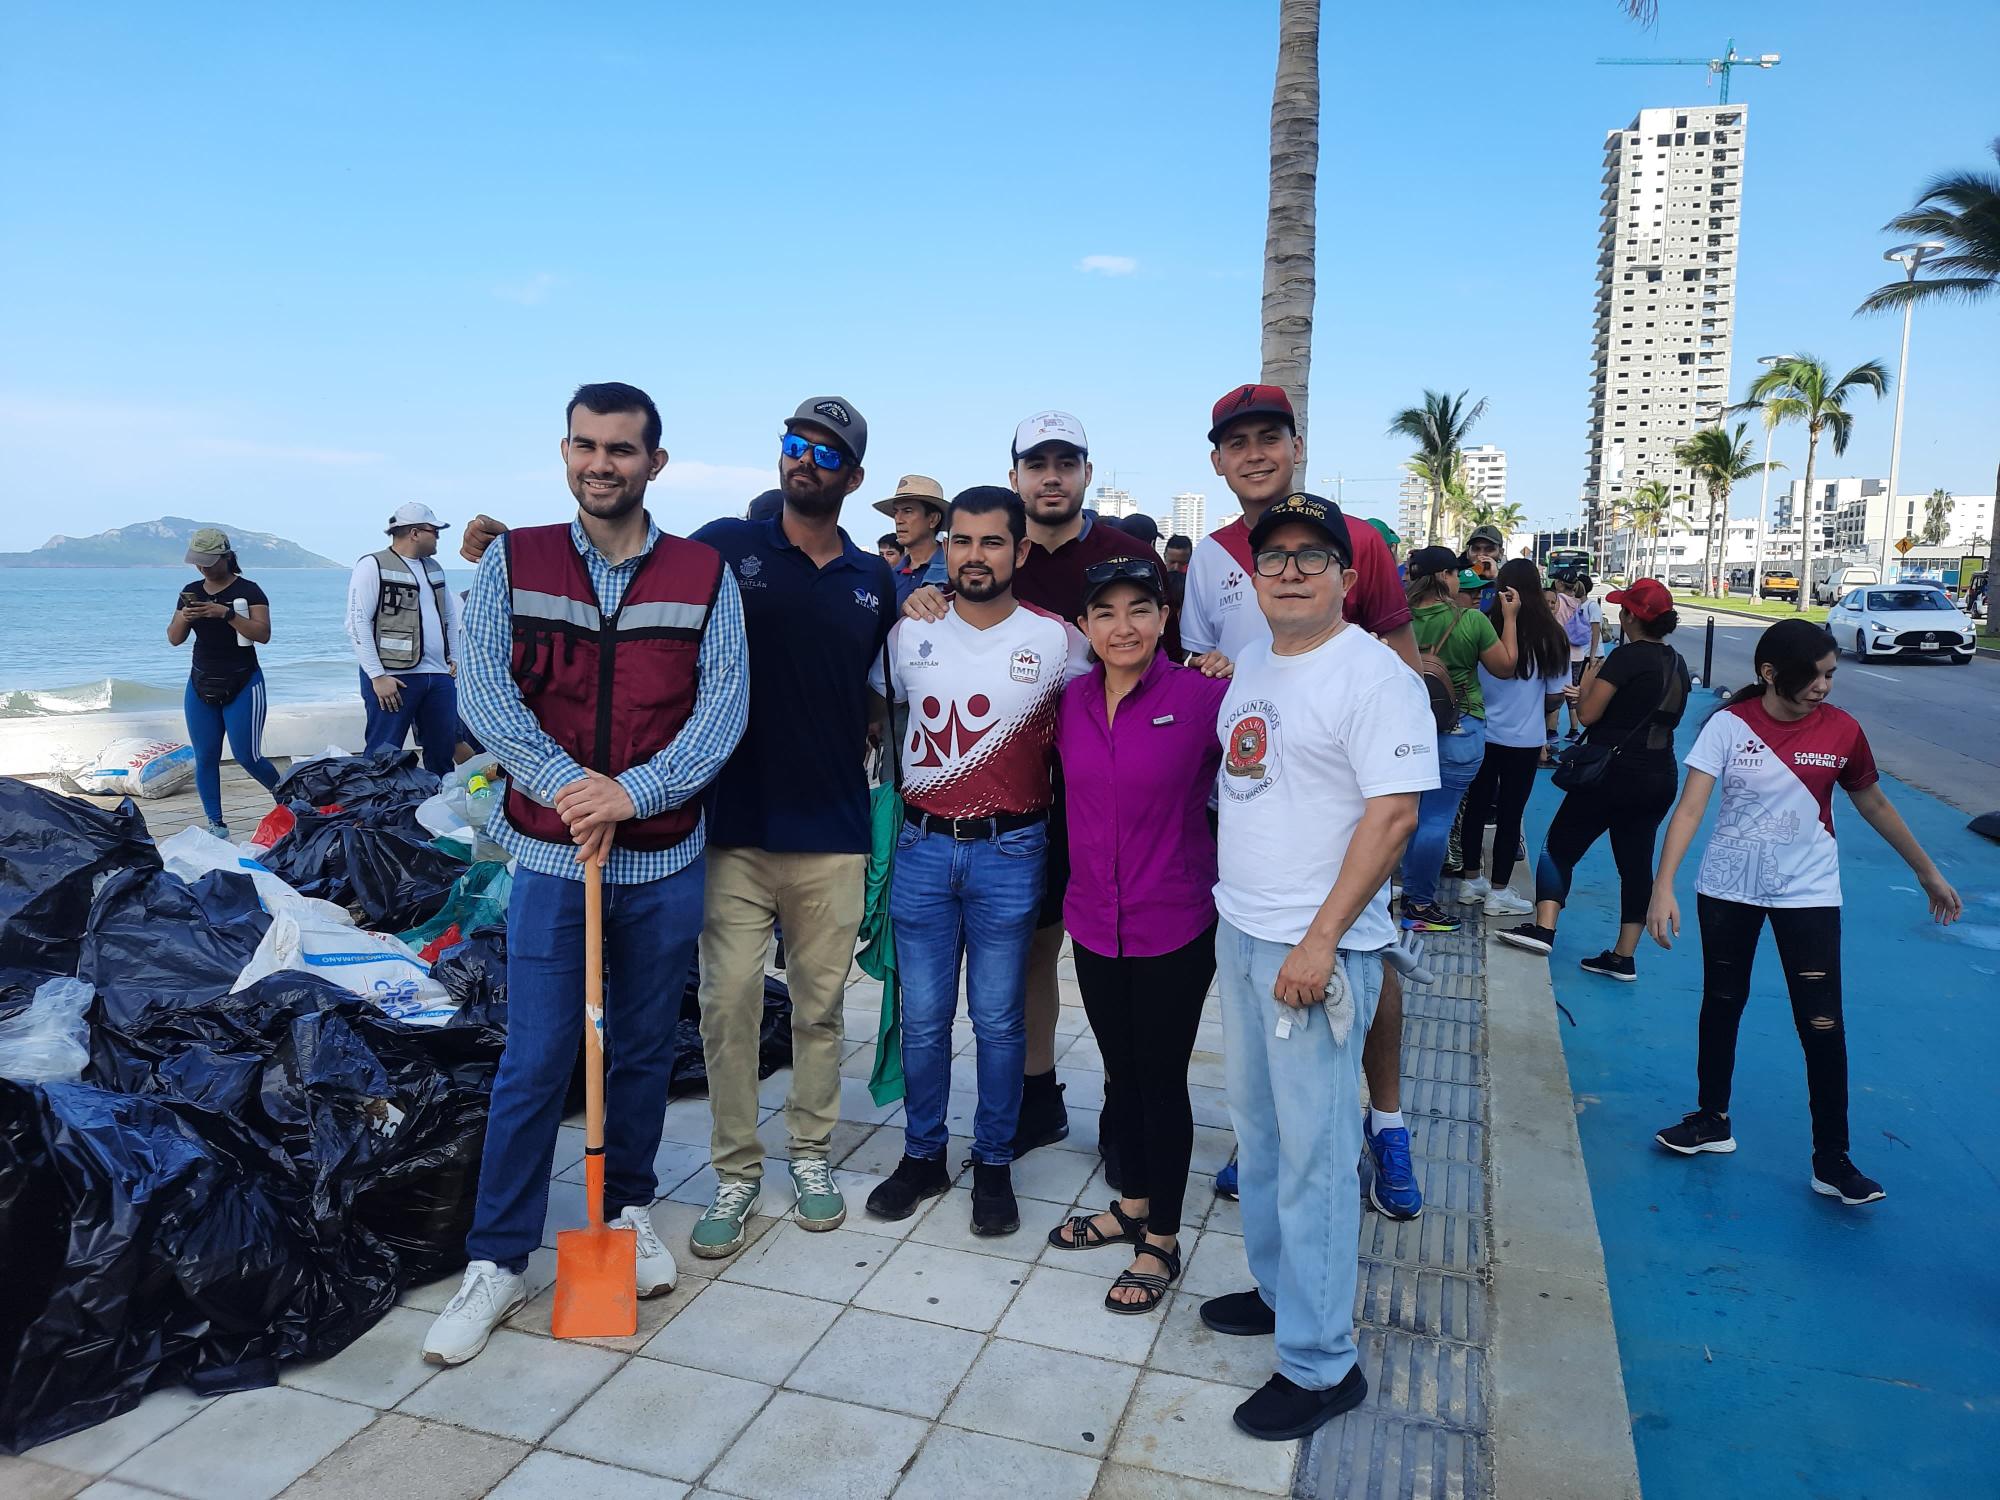 $!Se suman voluntarios a limpieza masiva de playas en Mazatlán